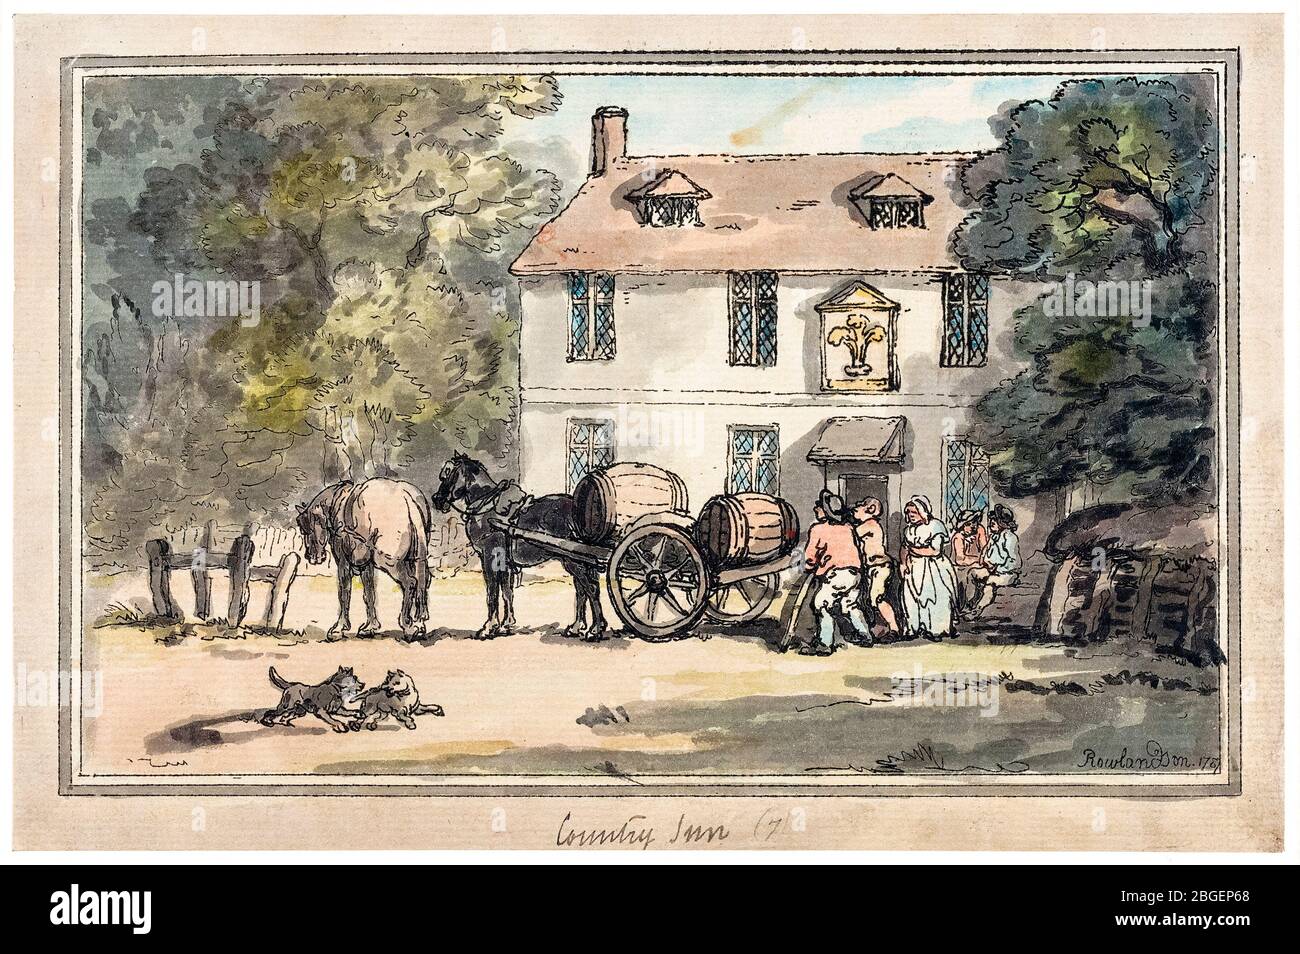 Thomas Rowlandson, Country Inn, impresión, 1787 Foto de stock